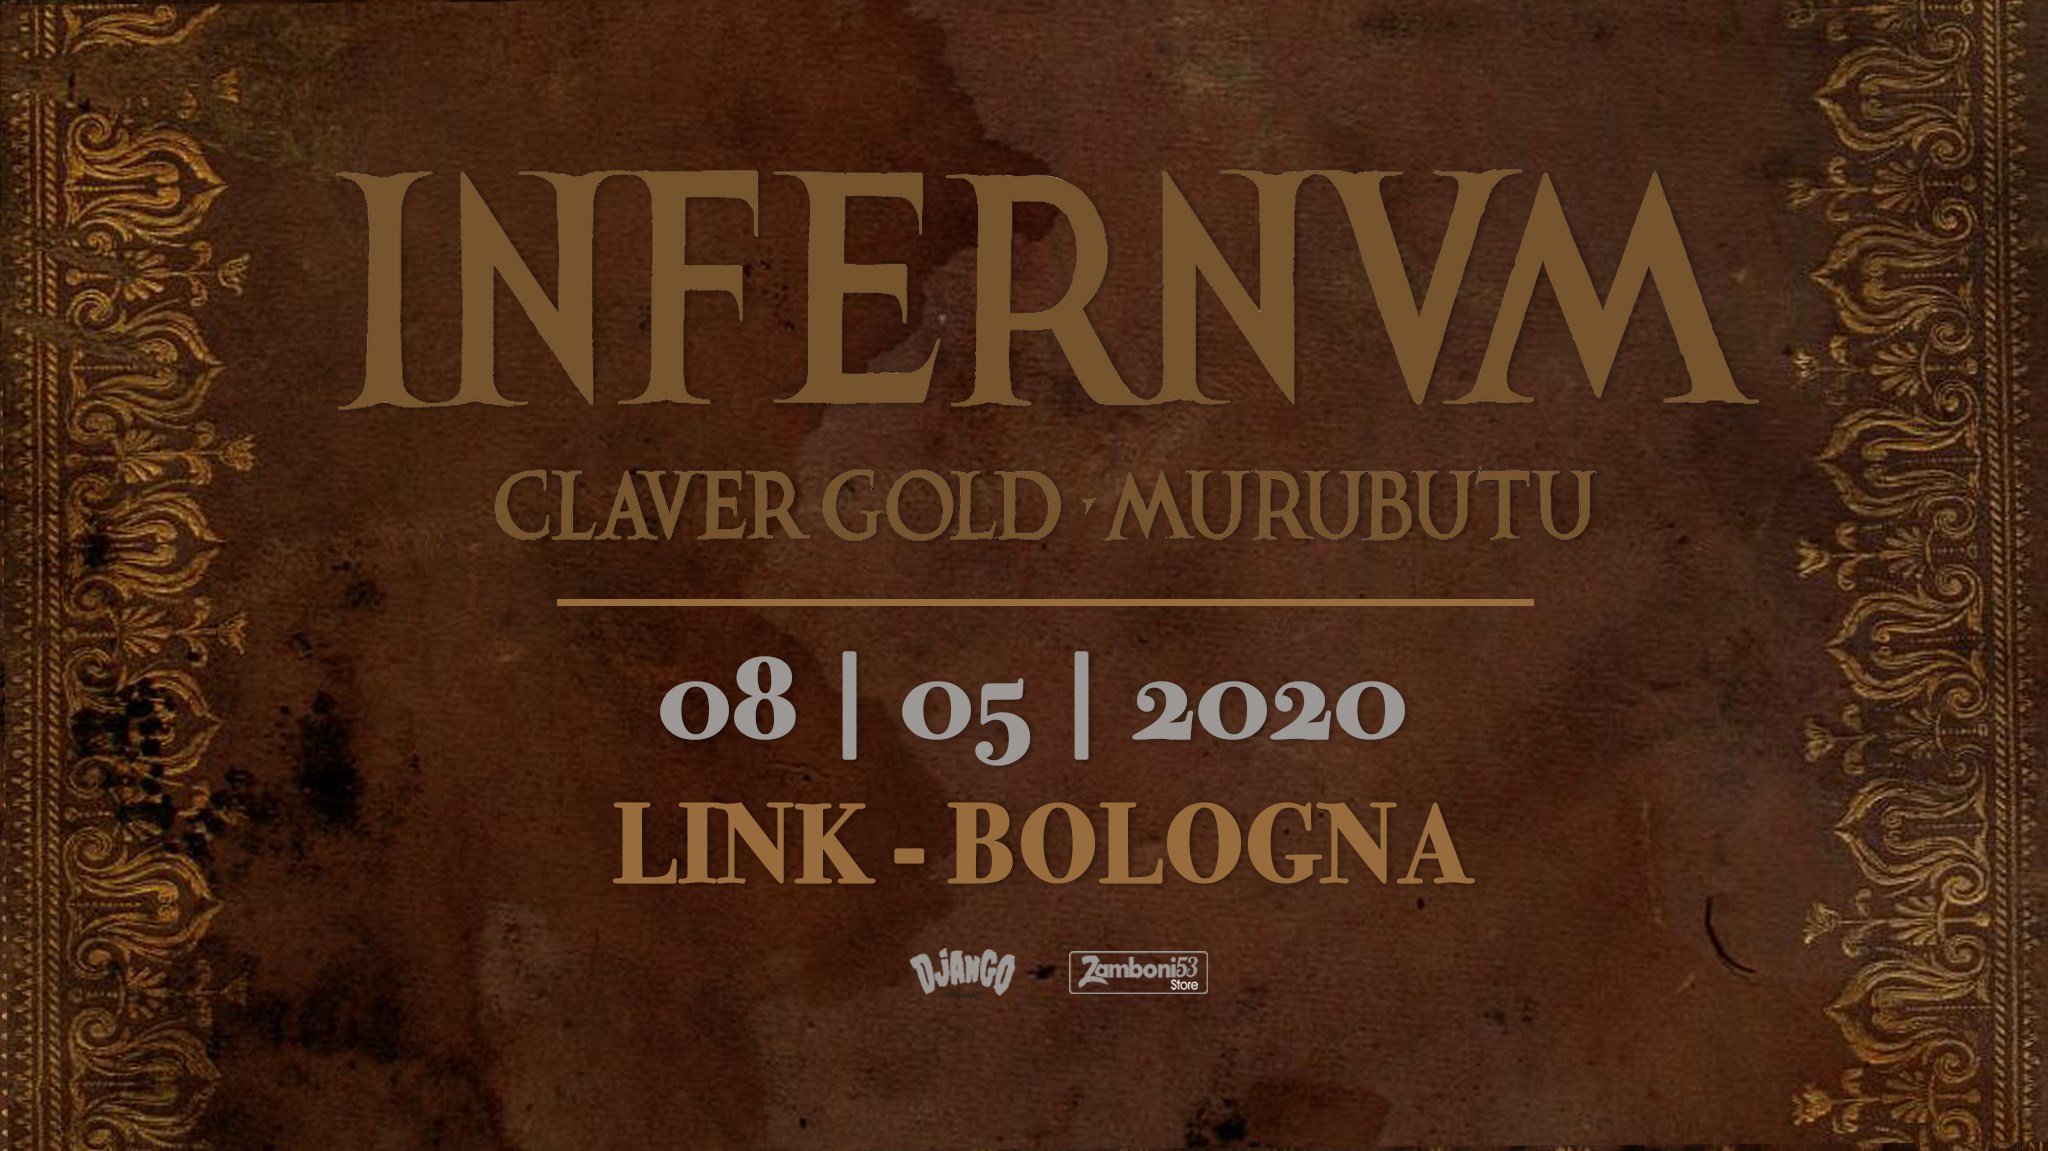 Claver Gold e Murubutu Infernvm tour Link Bologna